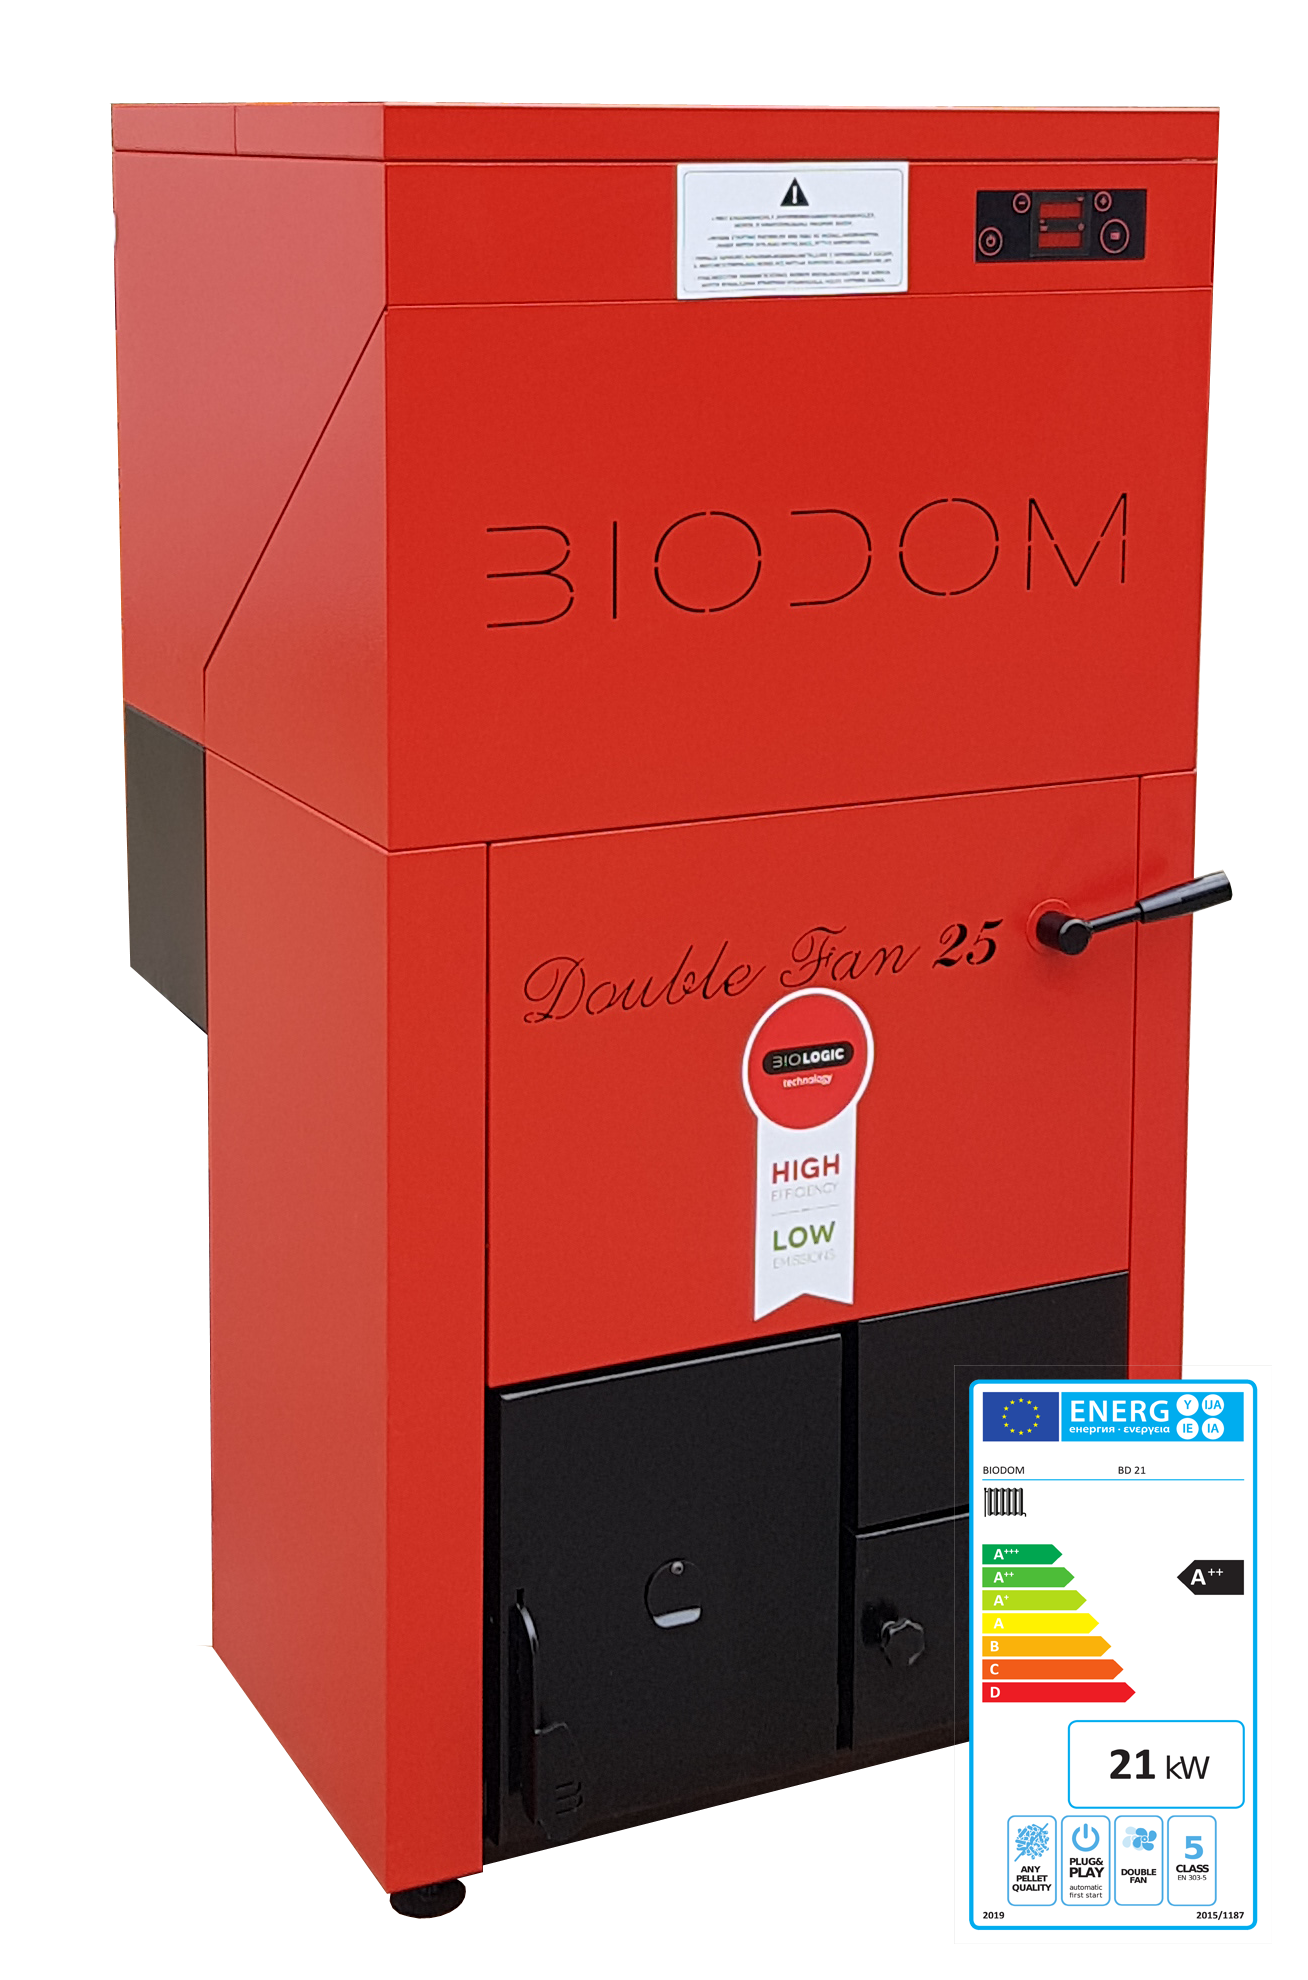 Biodom LX met energielabel A++